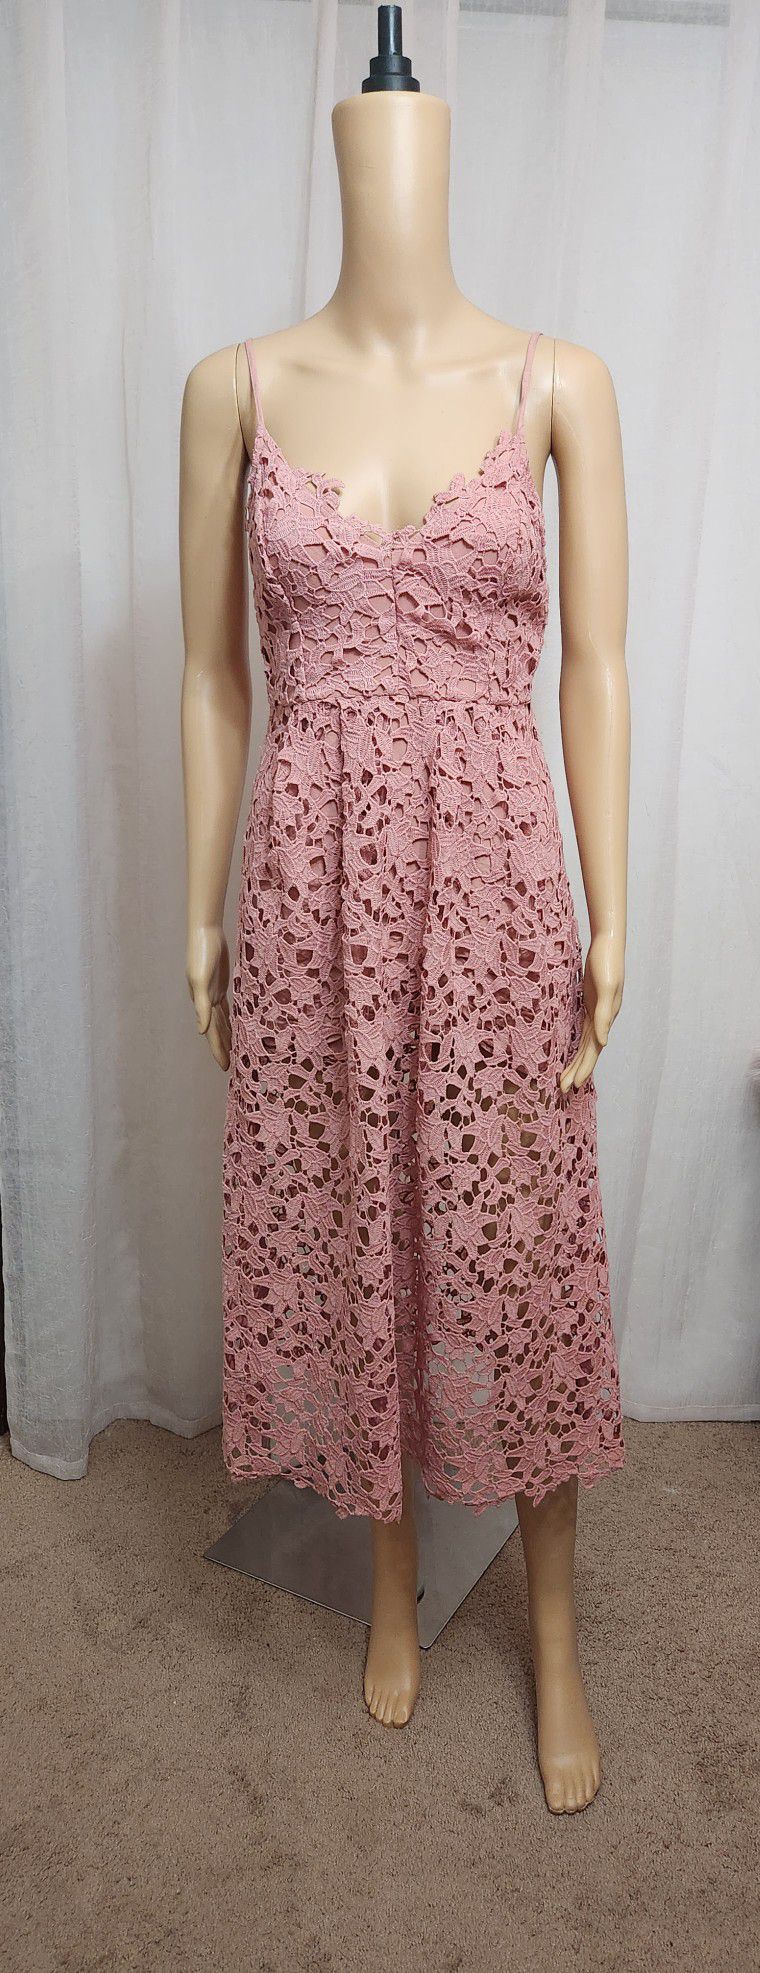 Lace Midi Blush Dress - Size Small 